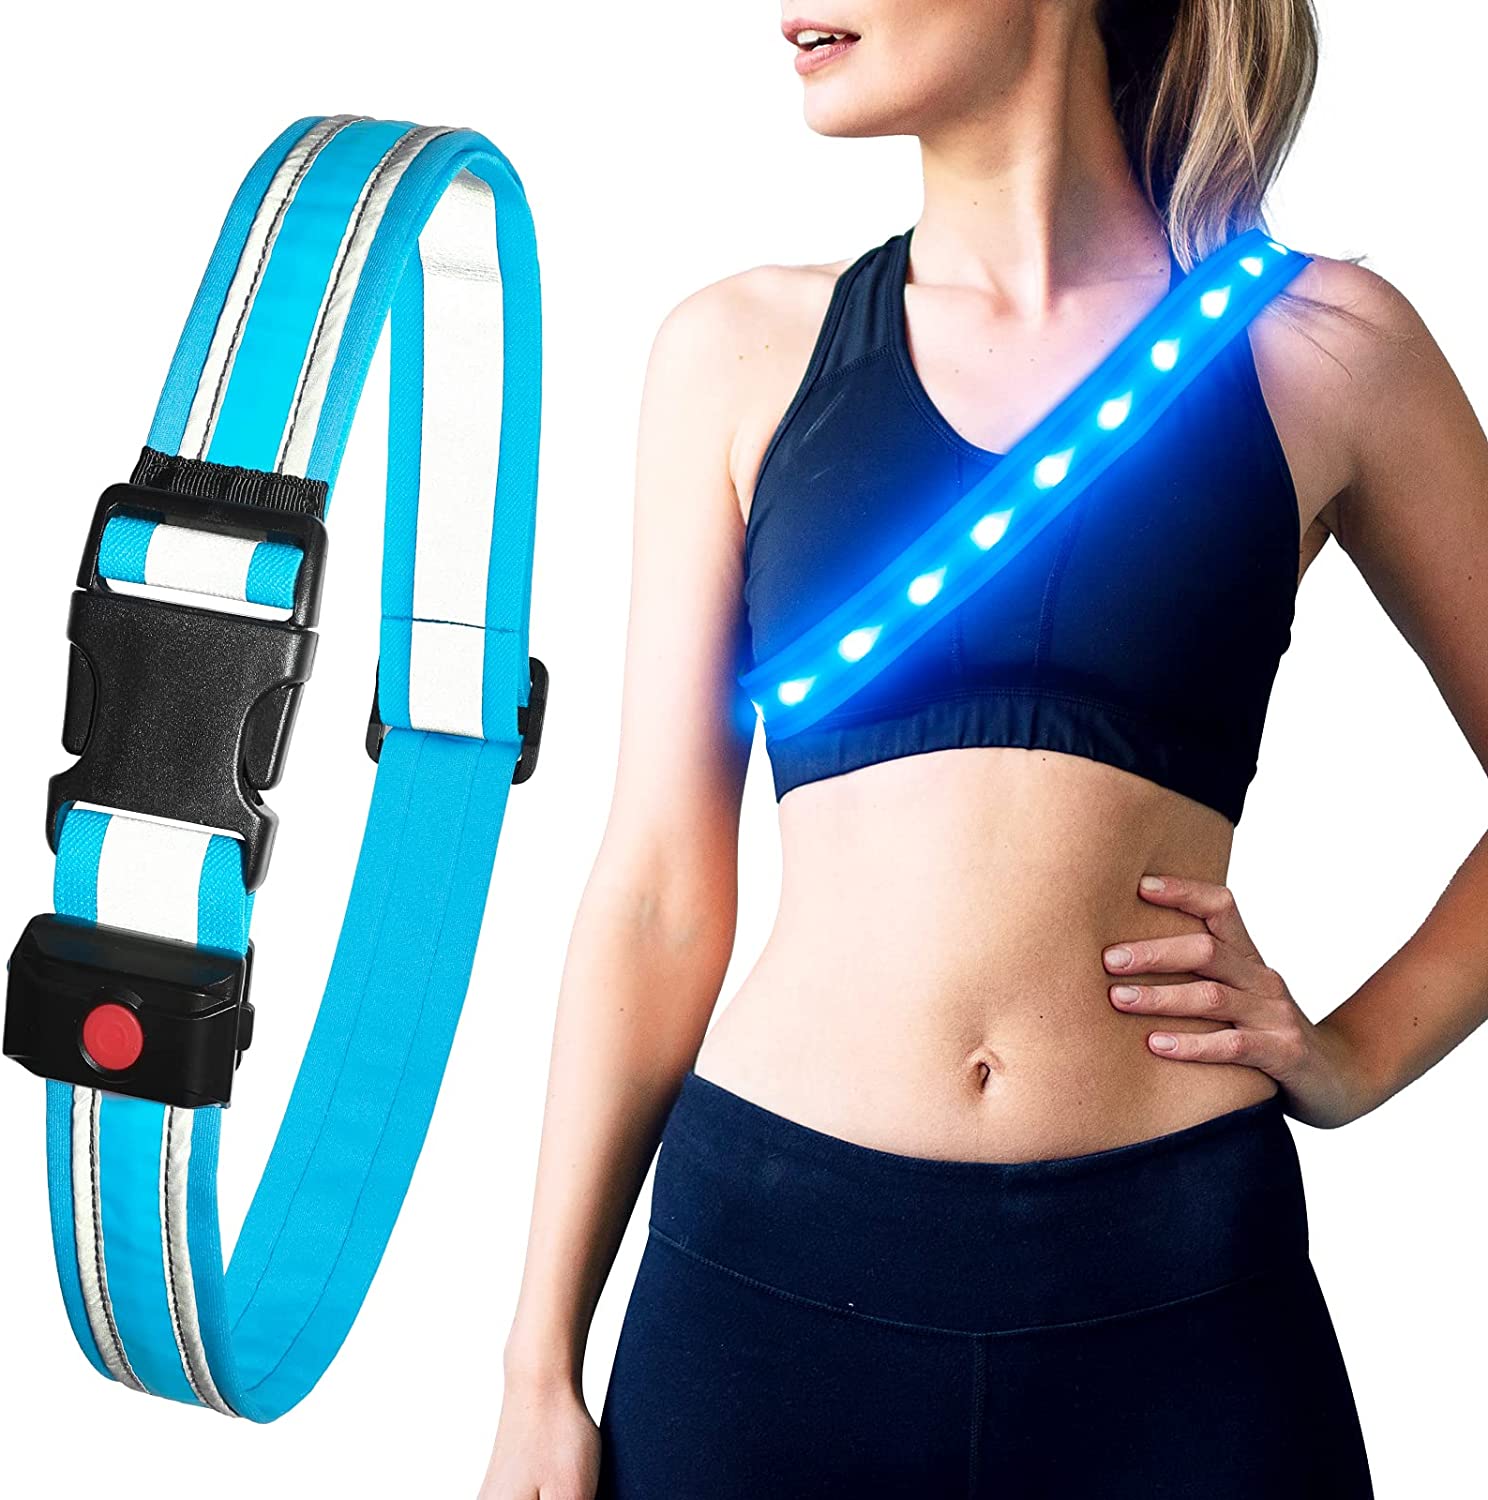 BSEEN Reflective LED Running Belt - Light Up Waistband for Running, Cycling, Hiking, Camping - BSEEN Direct